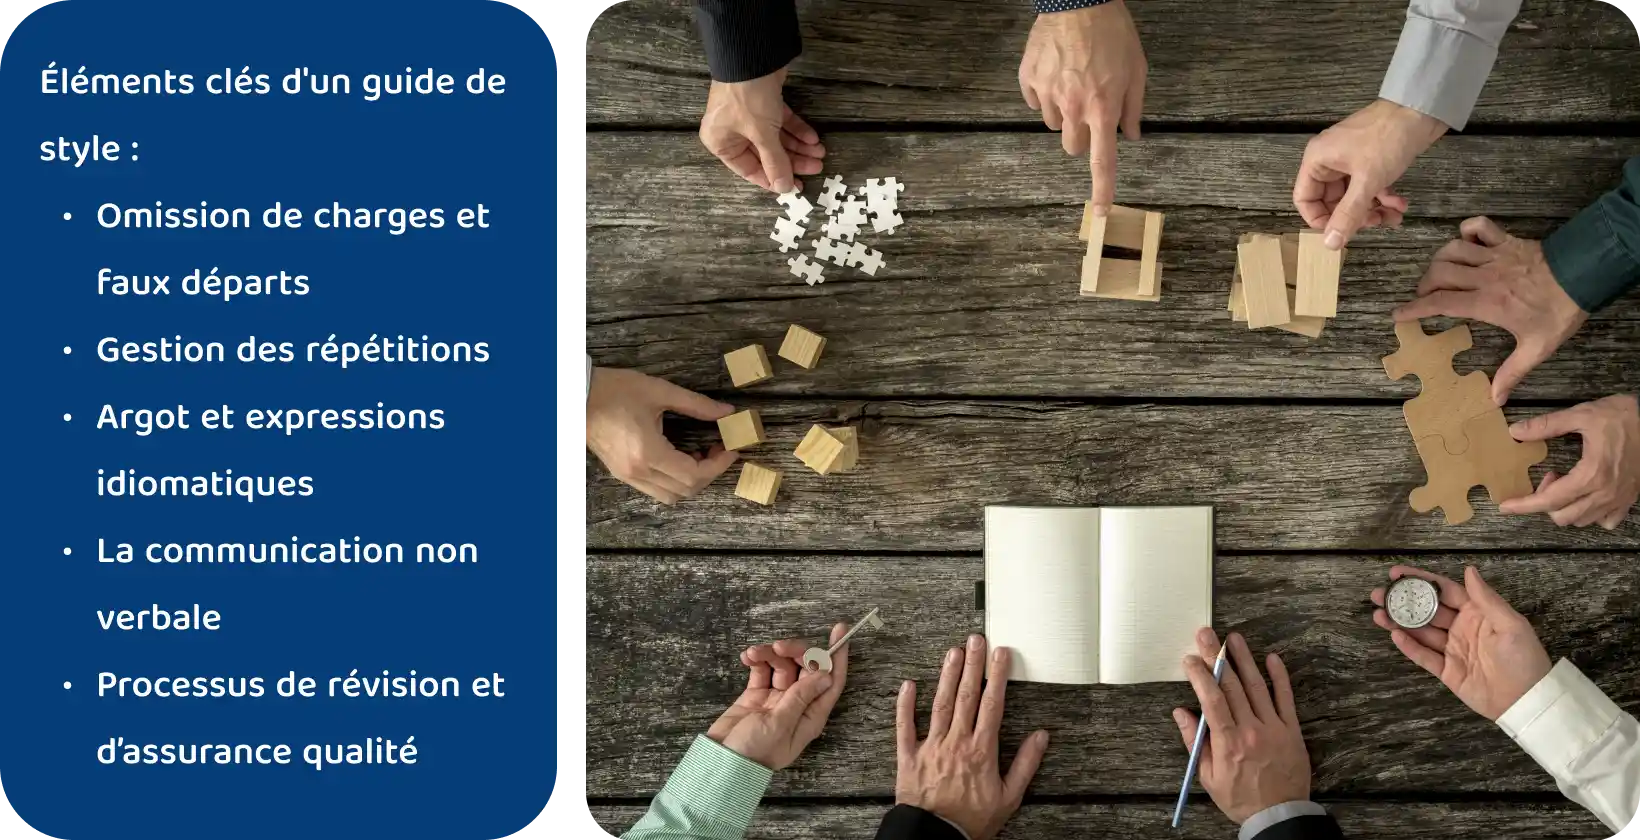 Un espace de travail collaboratif où les mains assemblent des puzzles et des blocs de bois, visualisant les éléments clés d’un guide de transcription.